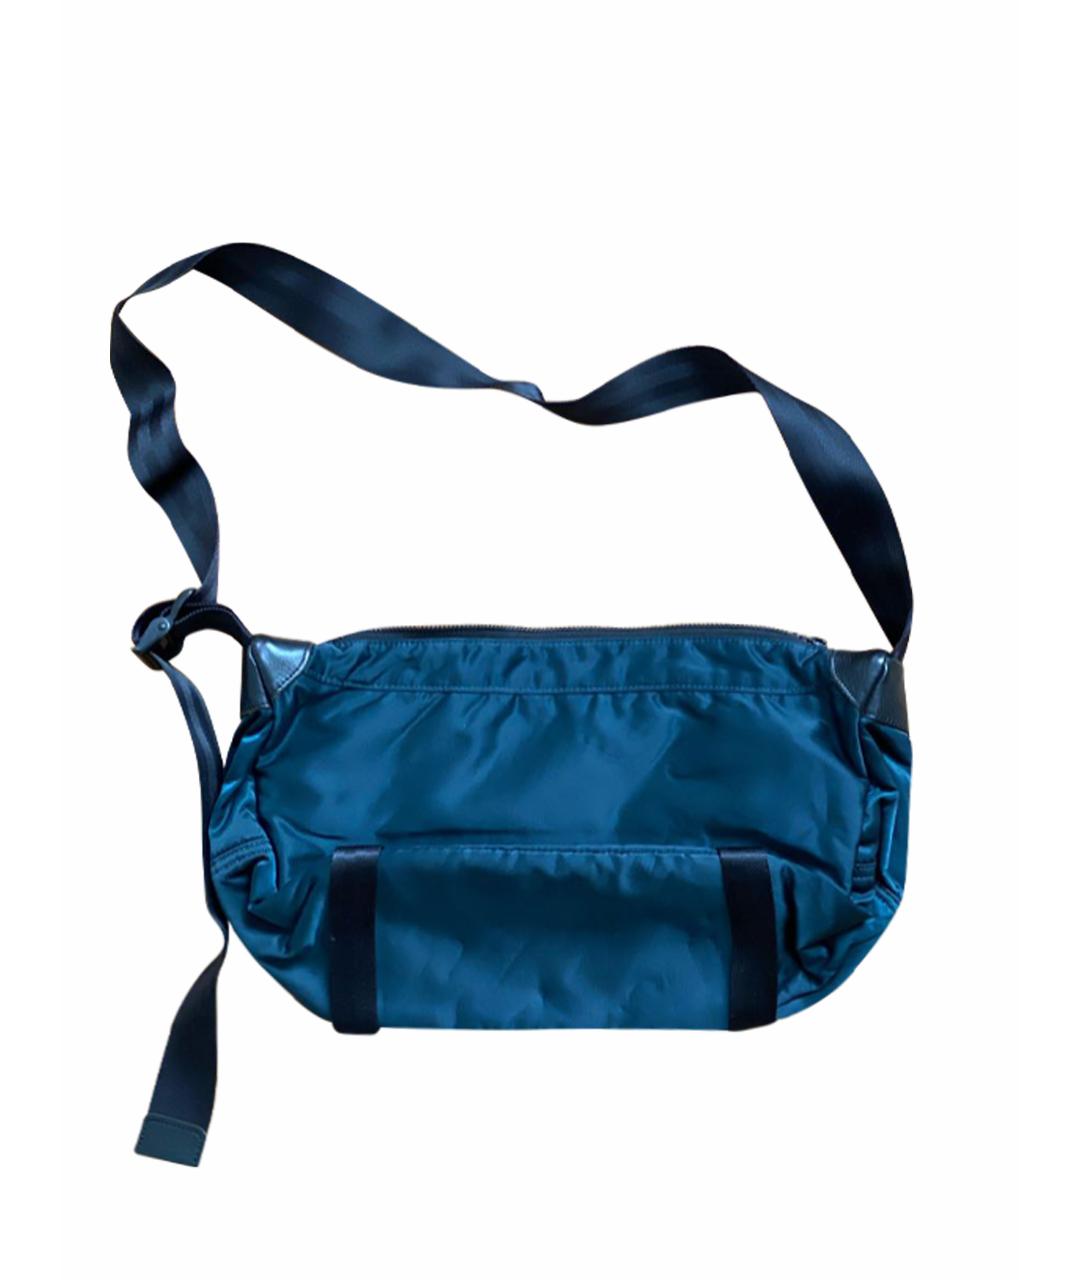 MASTERPEACE Синяя синтетическая сумка на плечо, фото 1